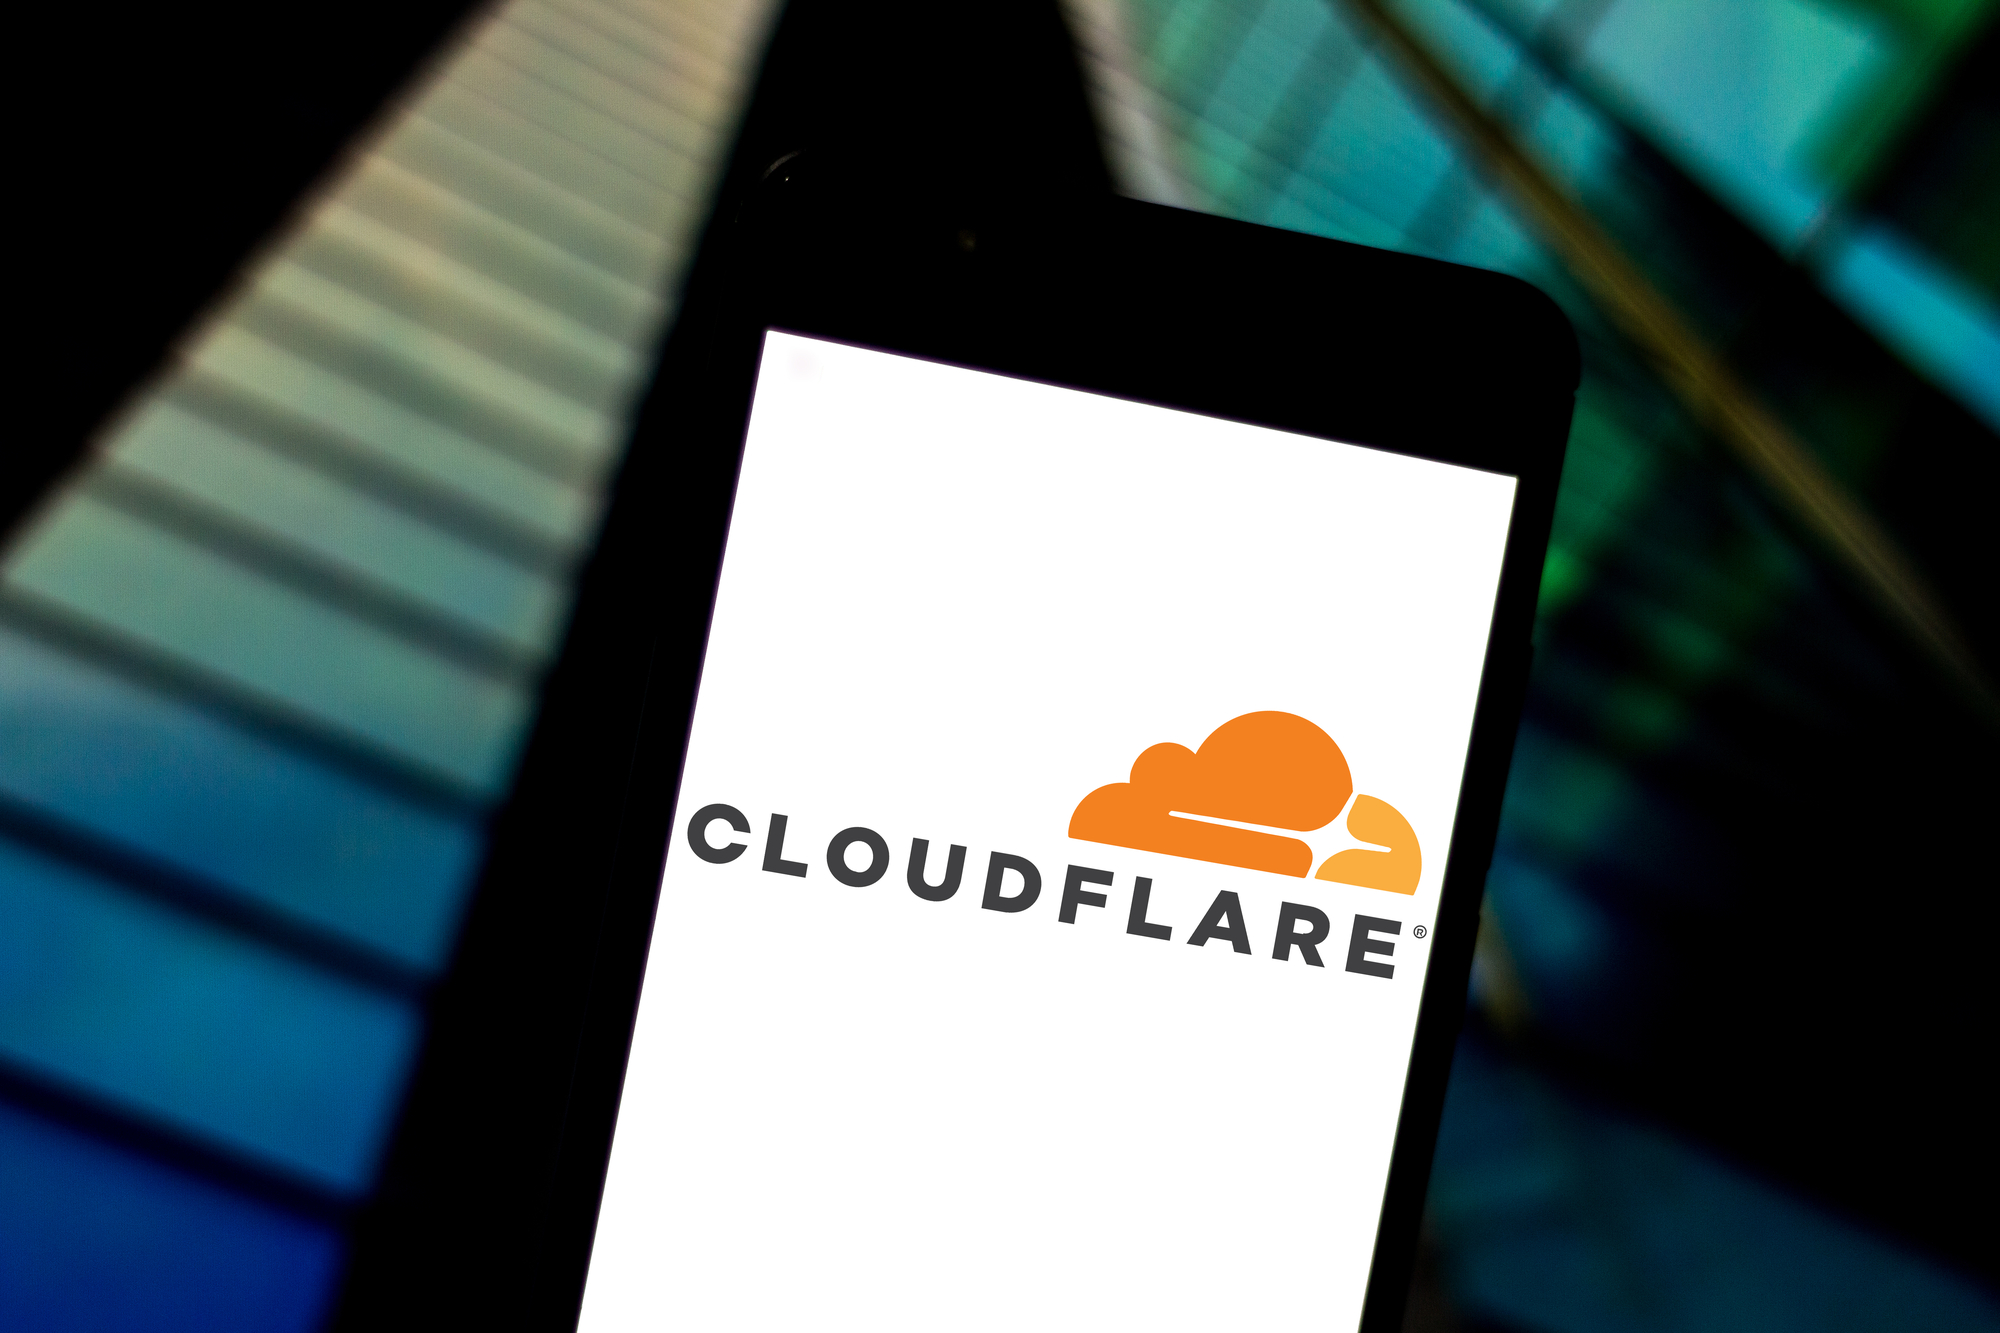 Das Cloudflare-Logo auf einem Smartphone